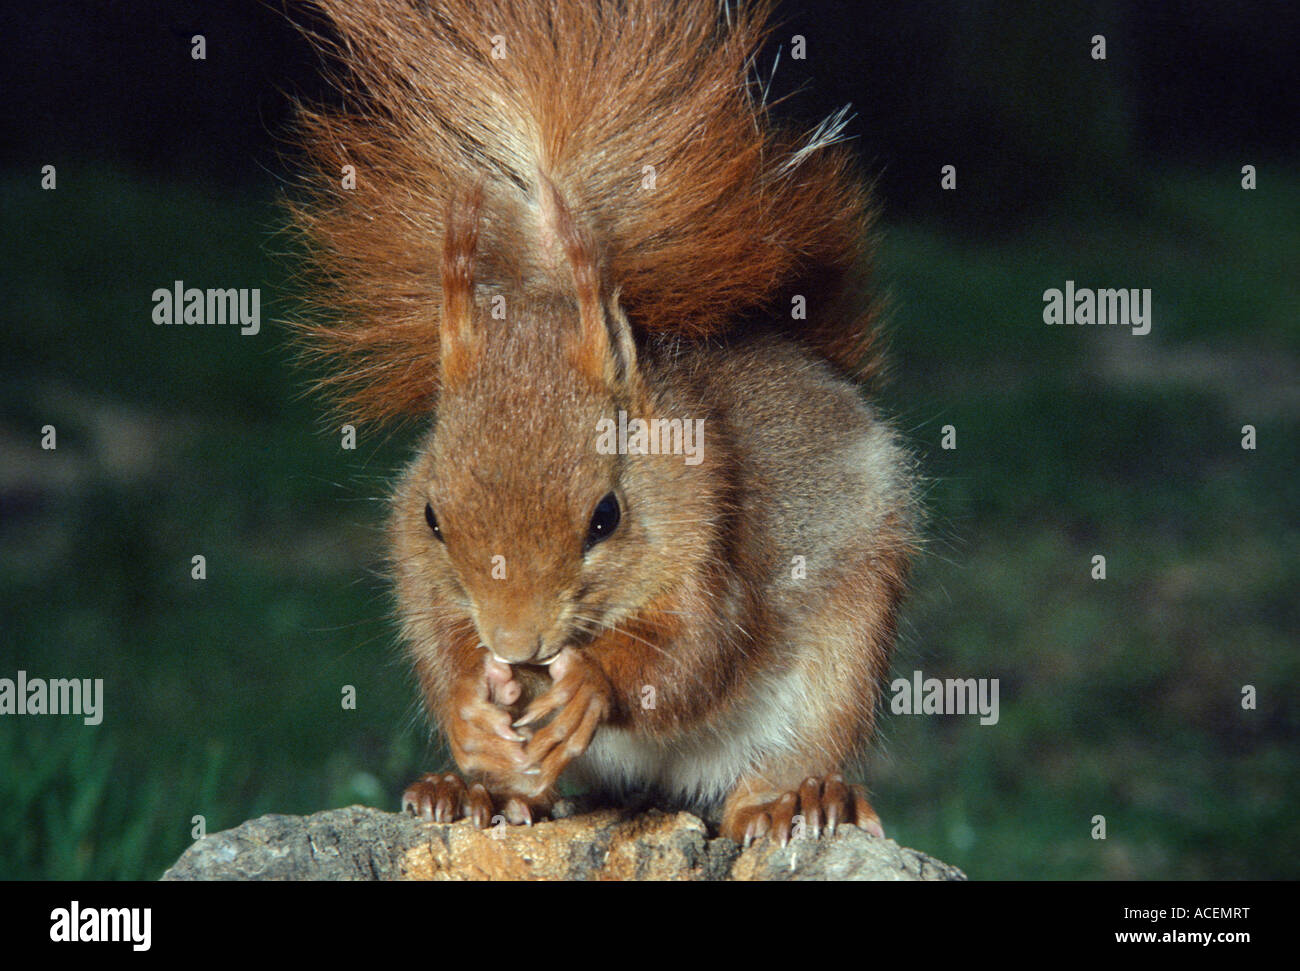 Ecureuil roux sciurus vulgaris Red Squirrel Stock Photo